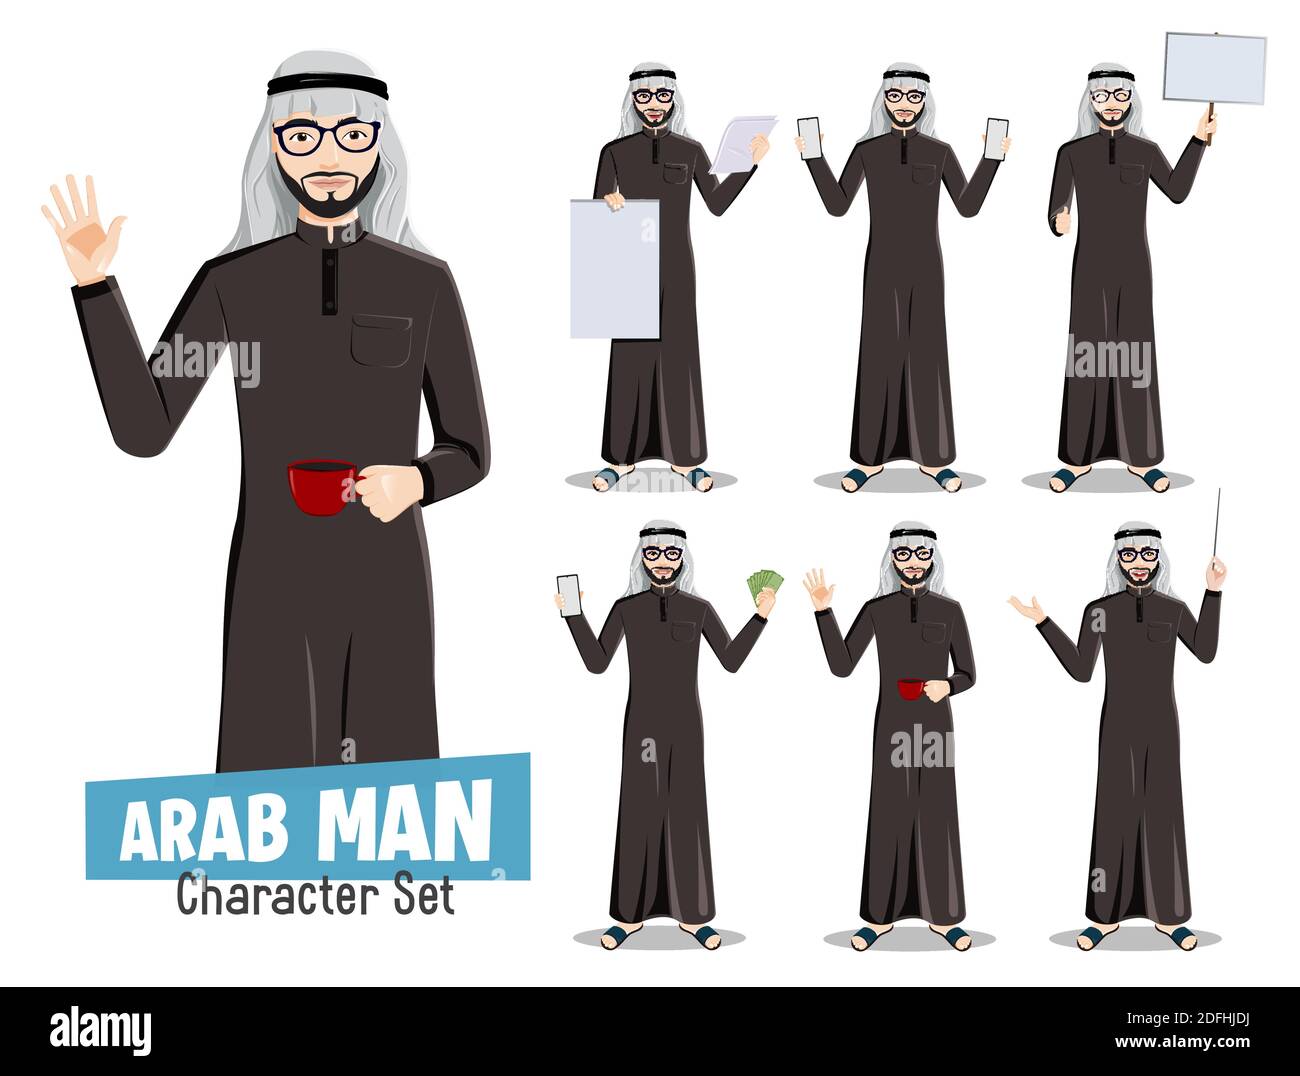 Arab man saudi Vektor-Zeichensatz. Arabische professionelle männliche Geschäftsmann Charaktere mit Kaffee, Geld und Whiteboard für arabische Karikatur. Stock Vektor